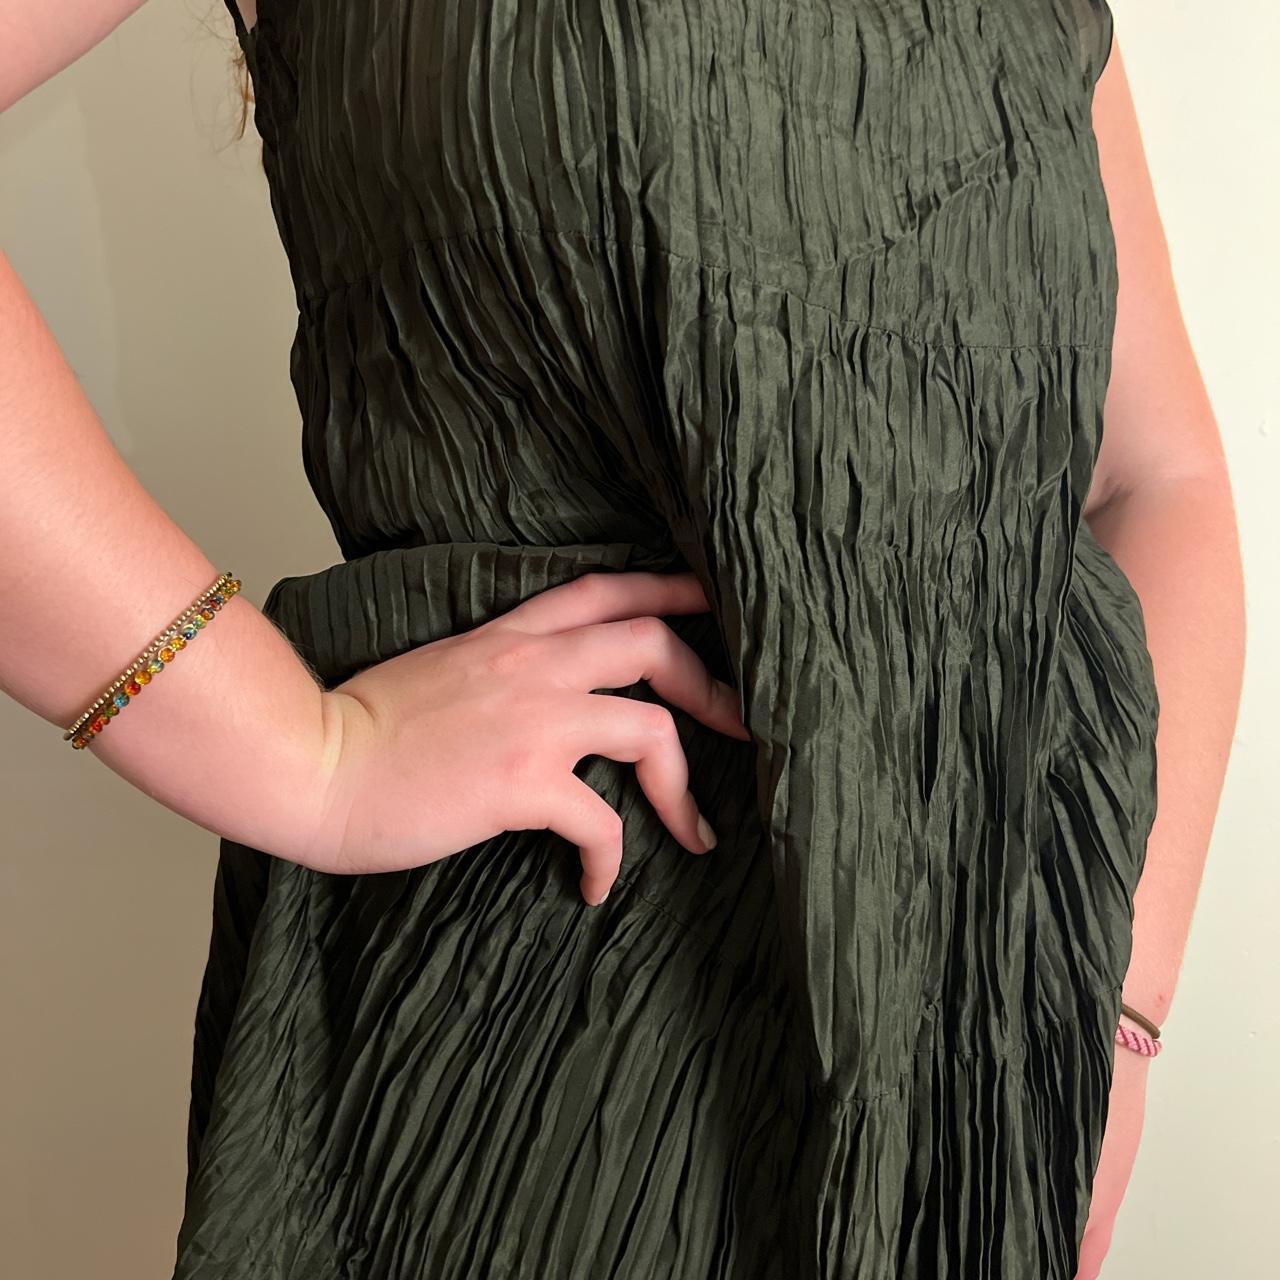 Eileen Fisher S black silk tank dress Drape-y, - Depop